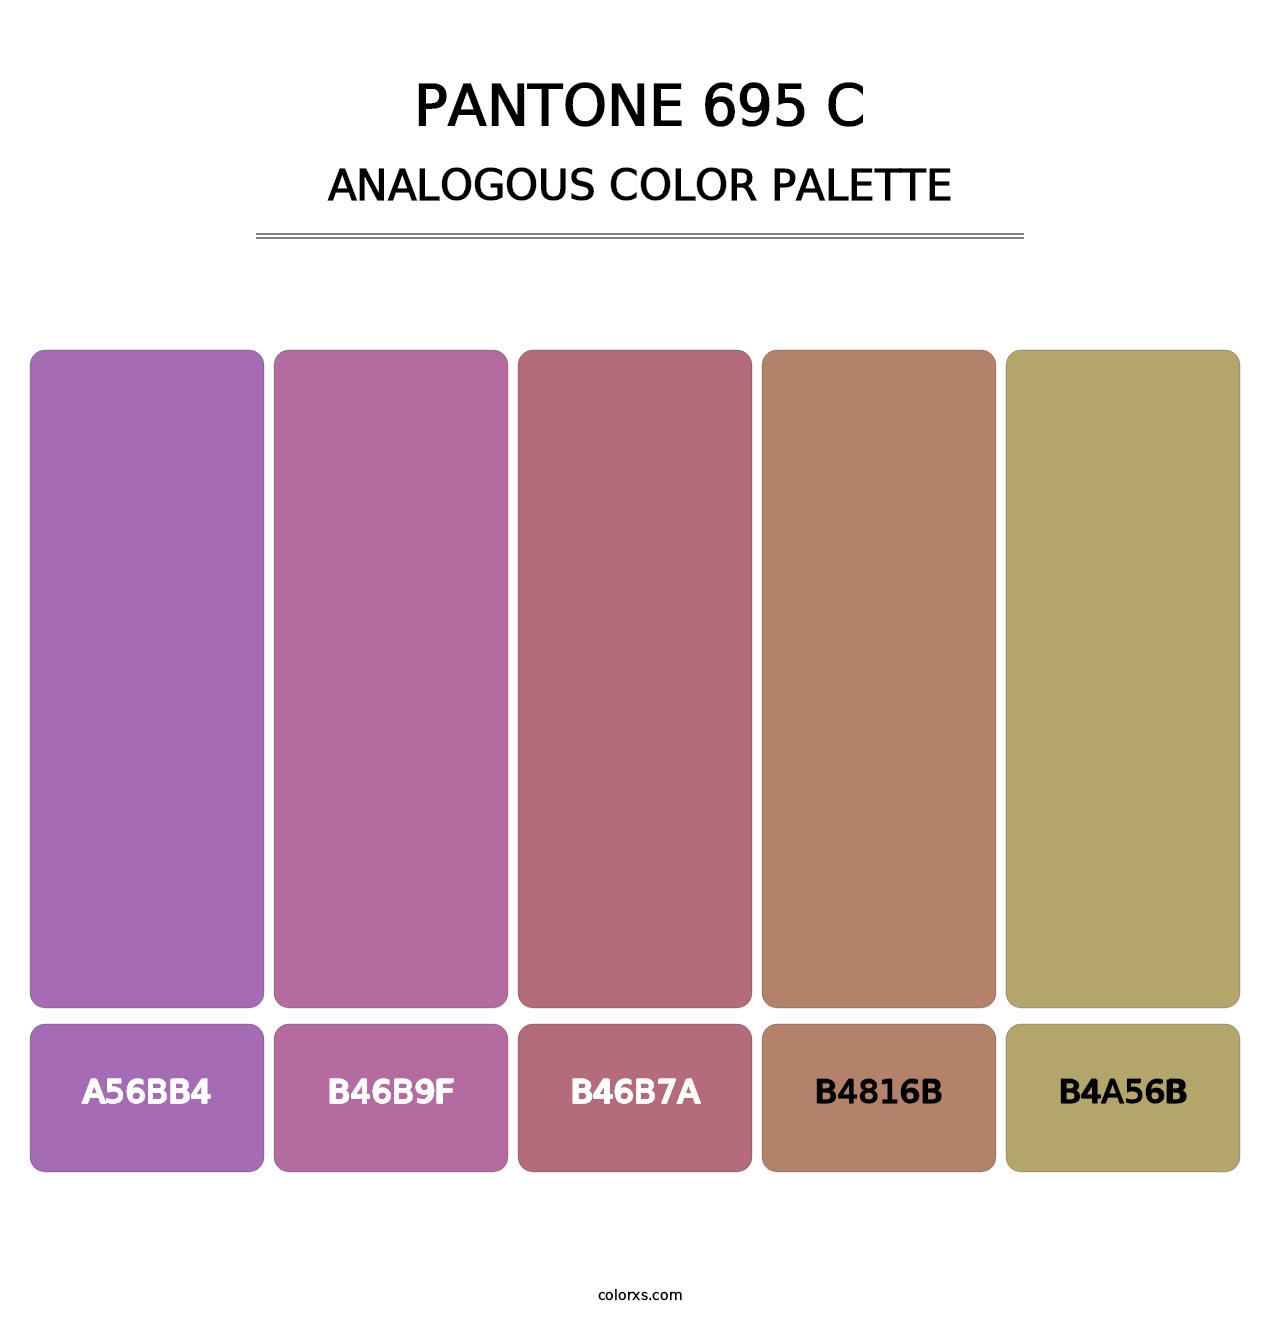 PANTONE 695 C - Analogous Color Palette